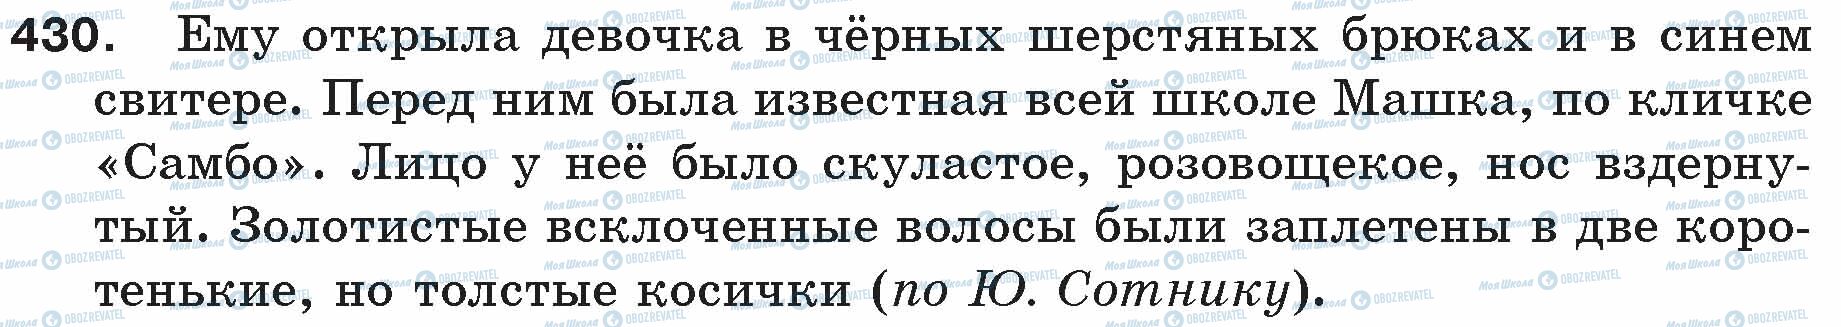 ГДЗ Русский язык 5 класс страница 430